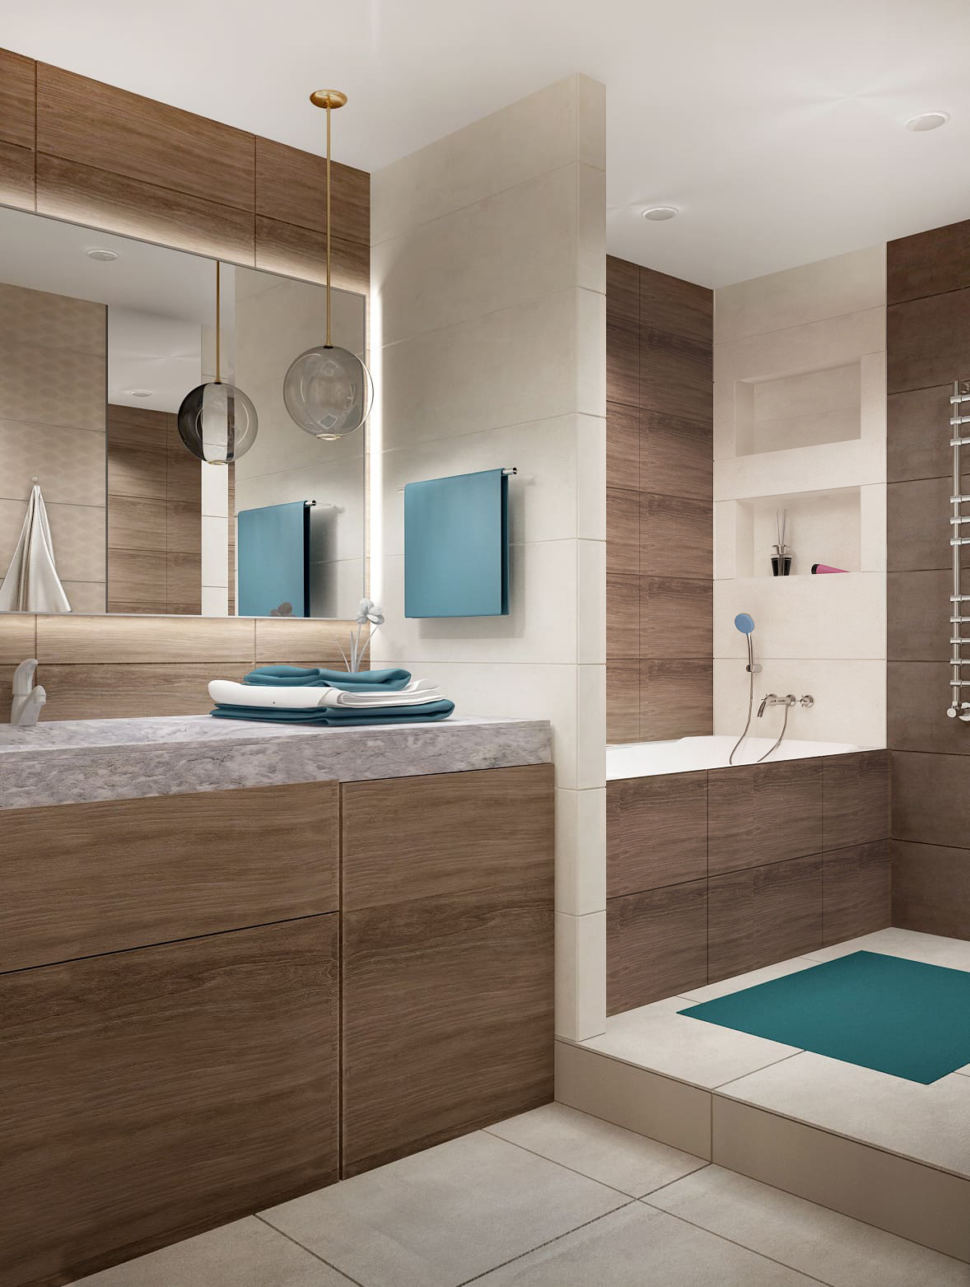 Дизайн-интерьера ванной комнаты в бежевых тонах 7 кв.м, бежевая тумба, зеркало, раковина, подвесной светильник